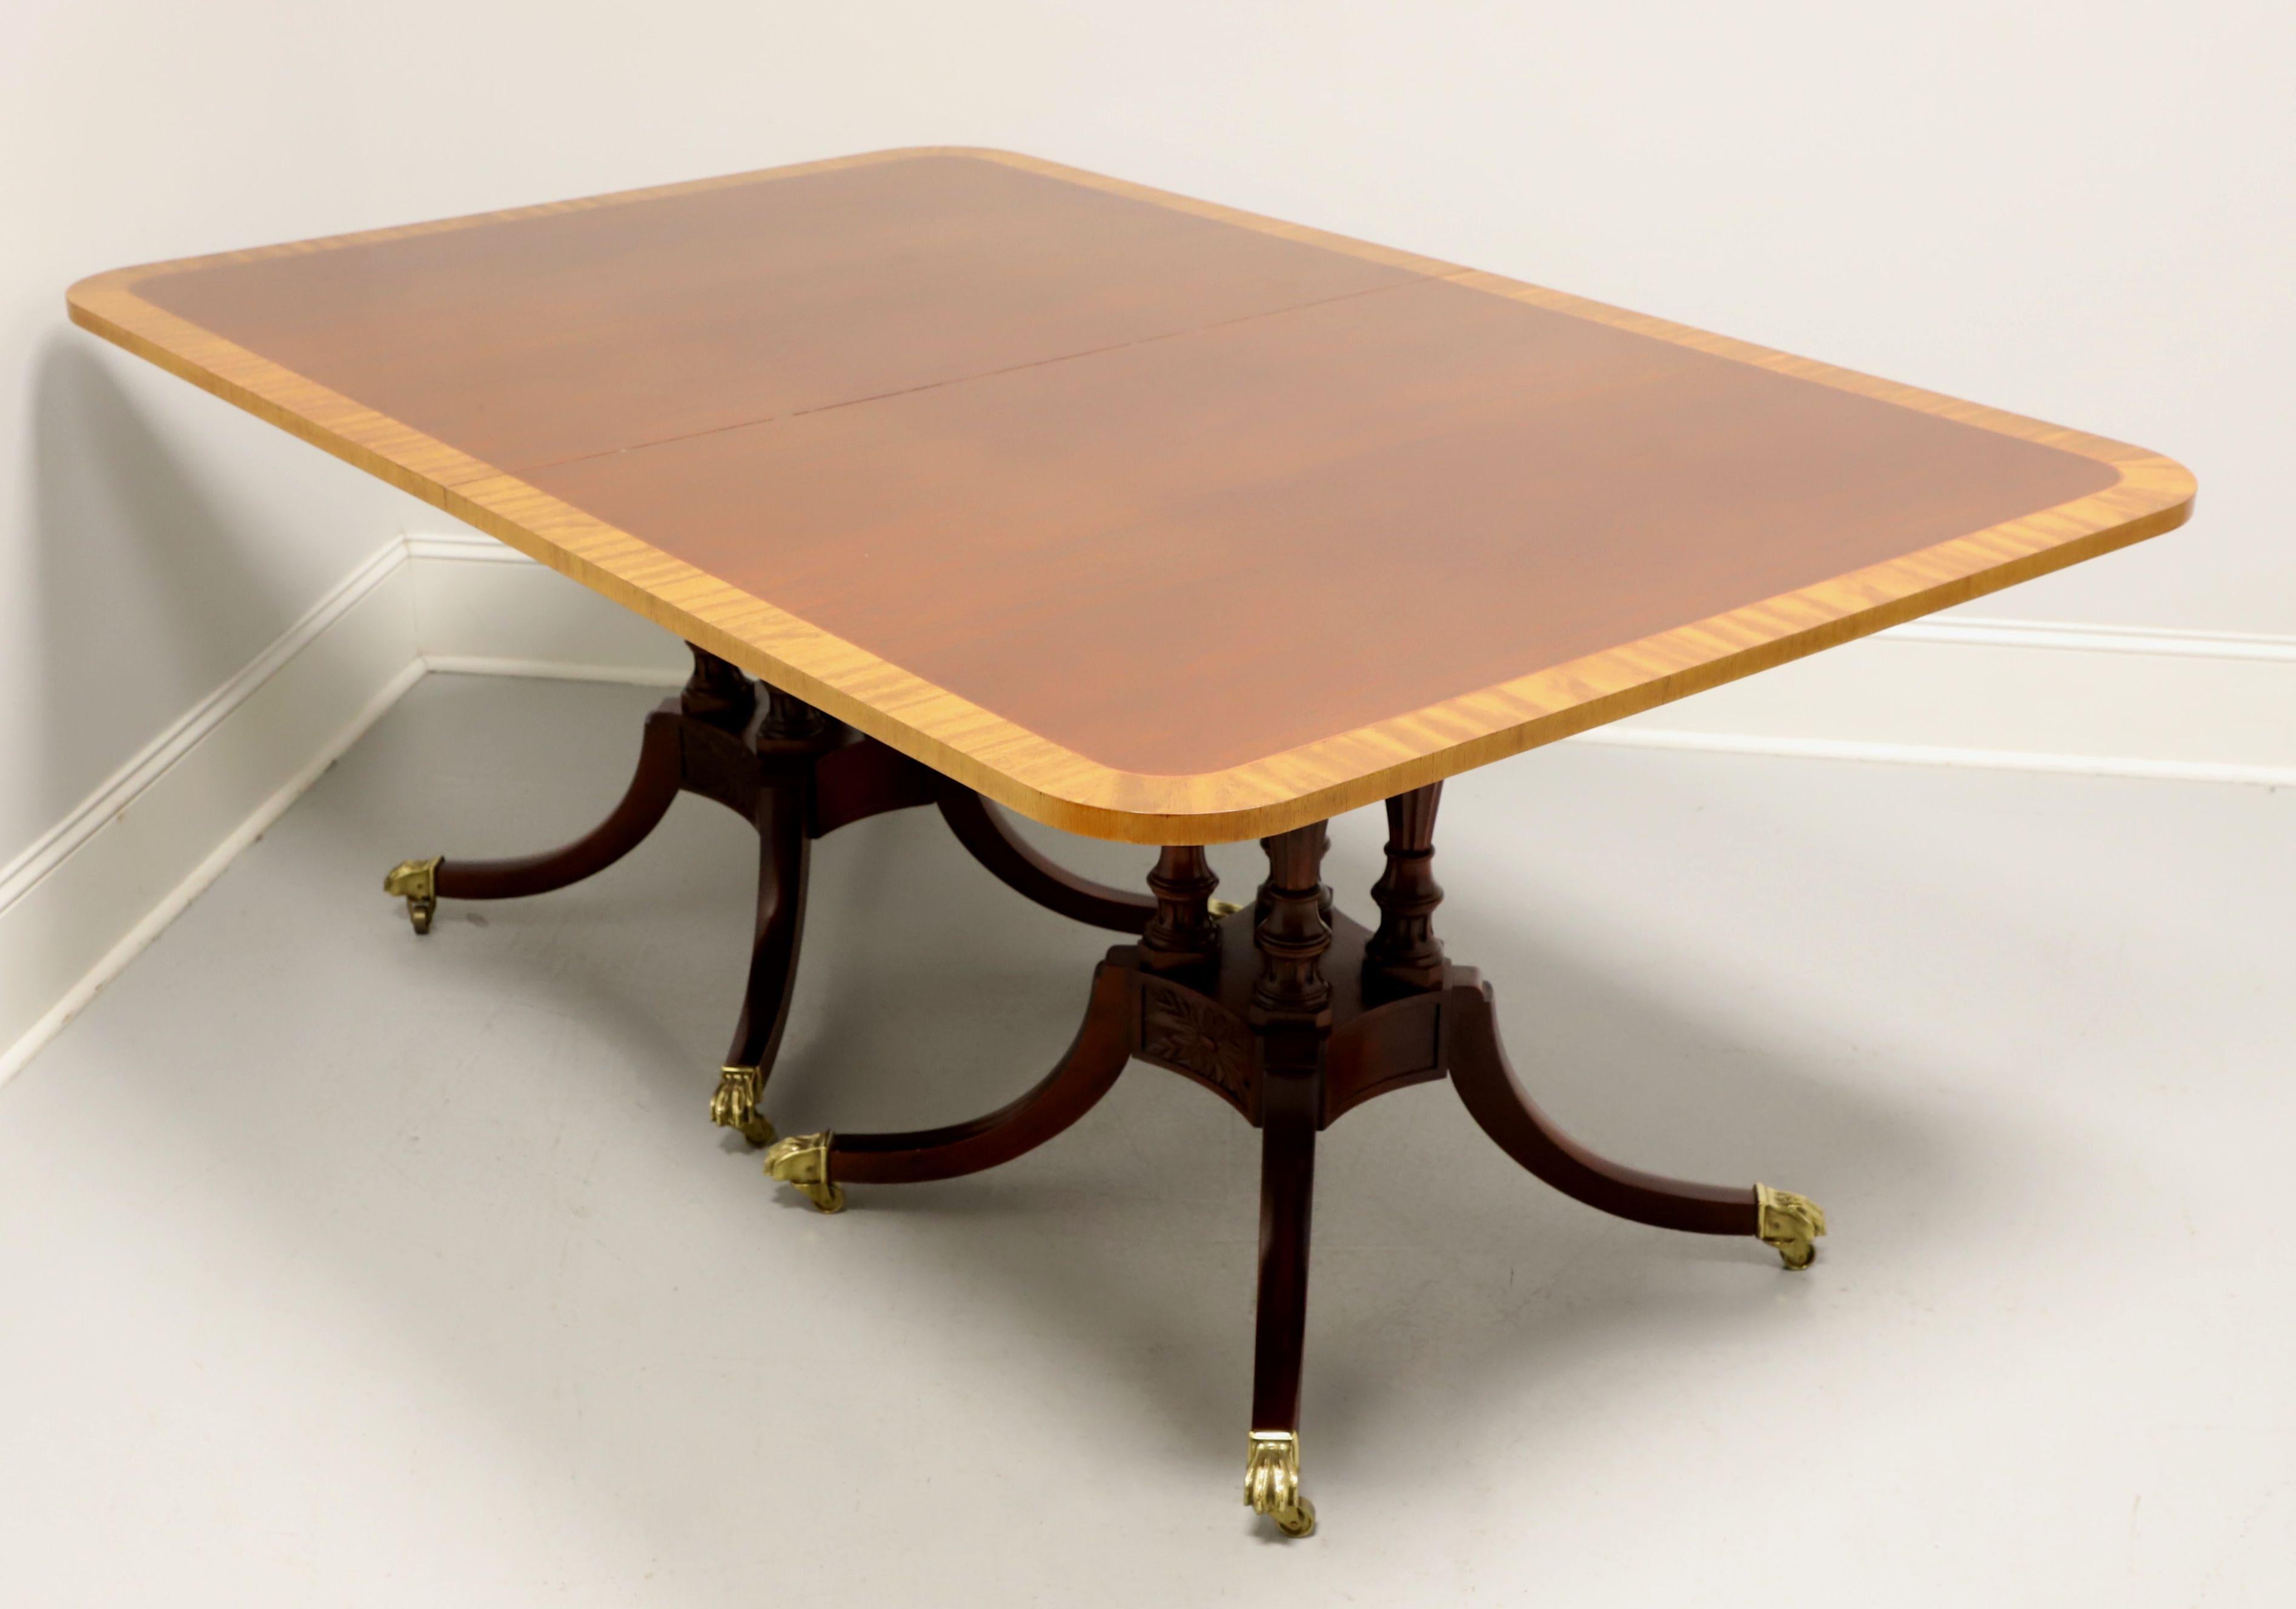 Table de salle à manger à double piédestal de style Regency par Baker Furniture, de leur Historic Charleston Reproductions Collection. Acajou avec bandeau en bois satiné sur le dessus et le bord, double piédestal en forme de cage d'oiseau